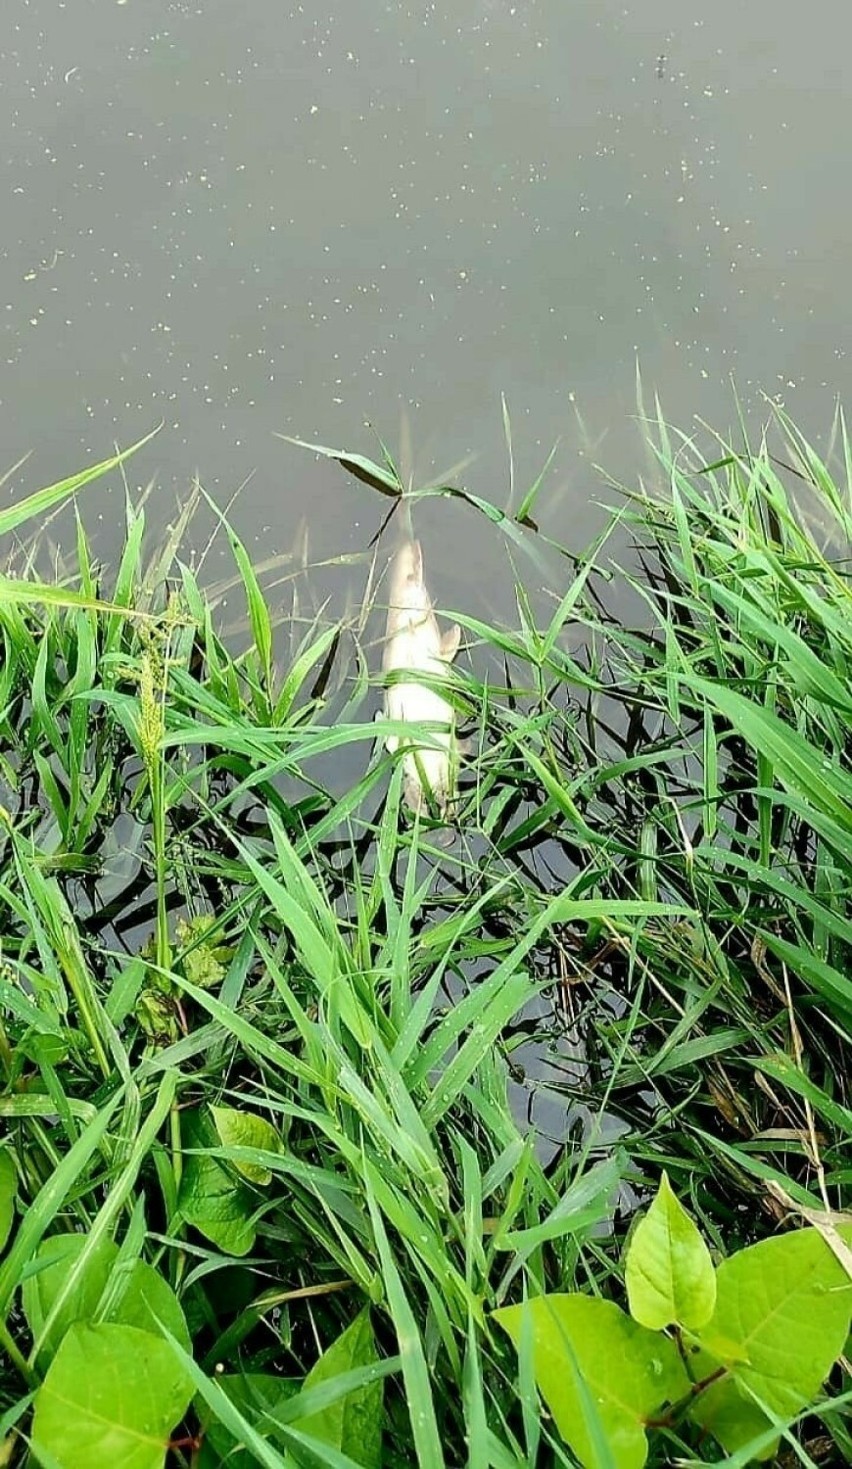 Półtorej tony śniętych ryb w Kanale Gliwickim! To już kolejny raz... Ujawniono dużą ilość alg w Odrze